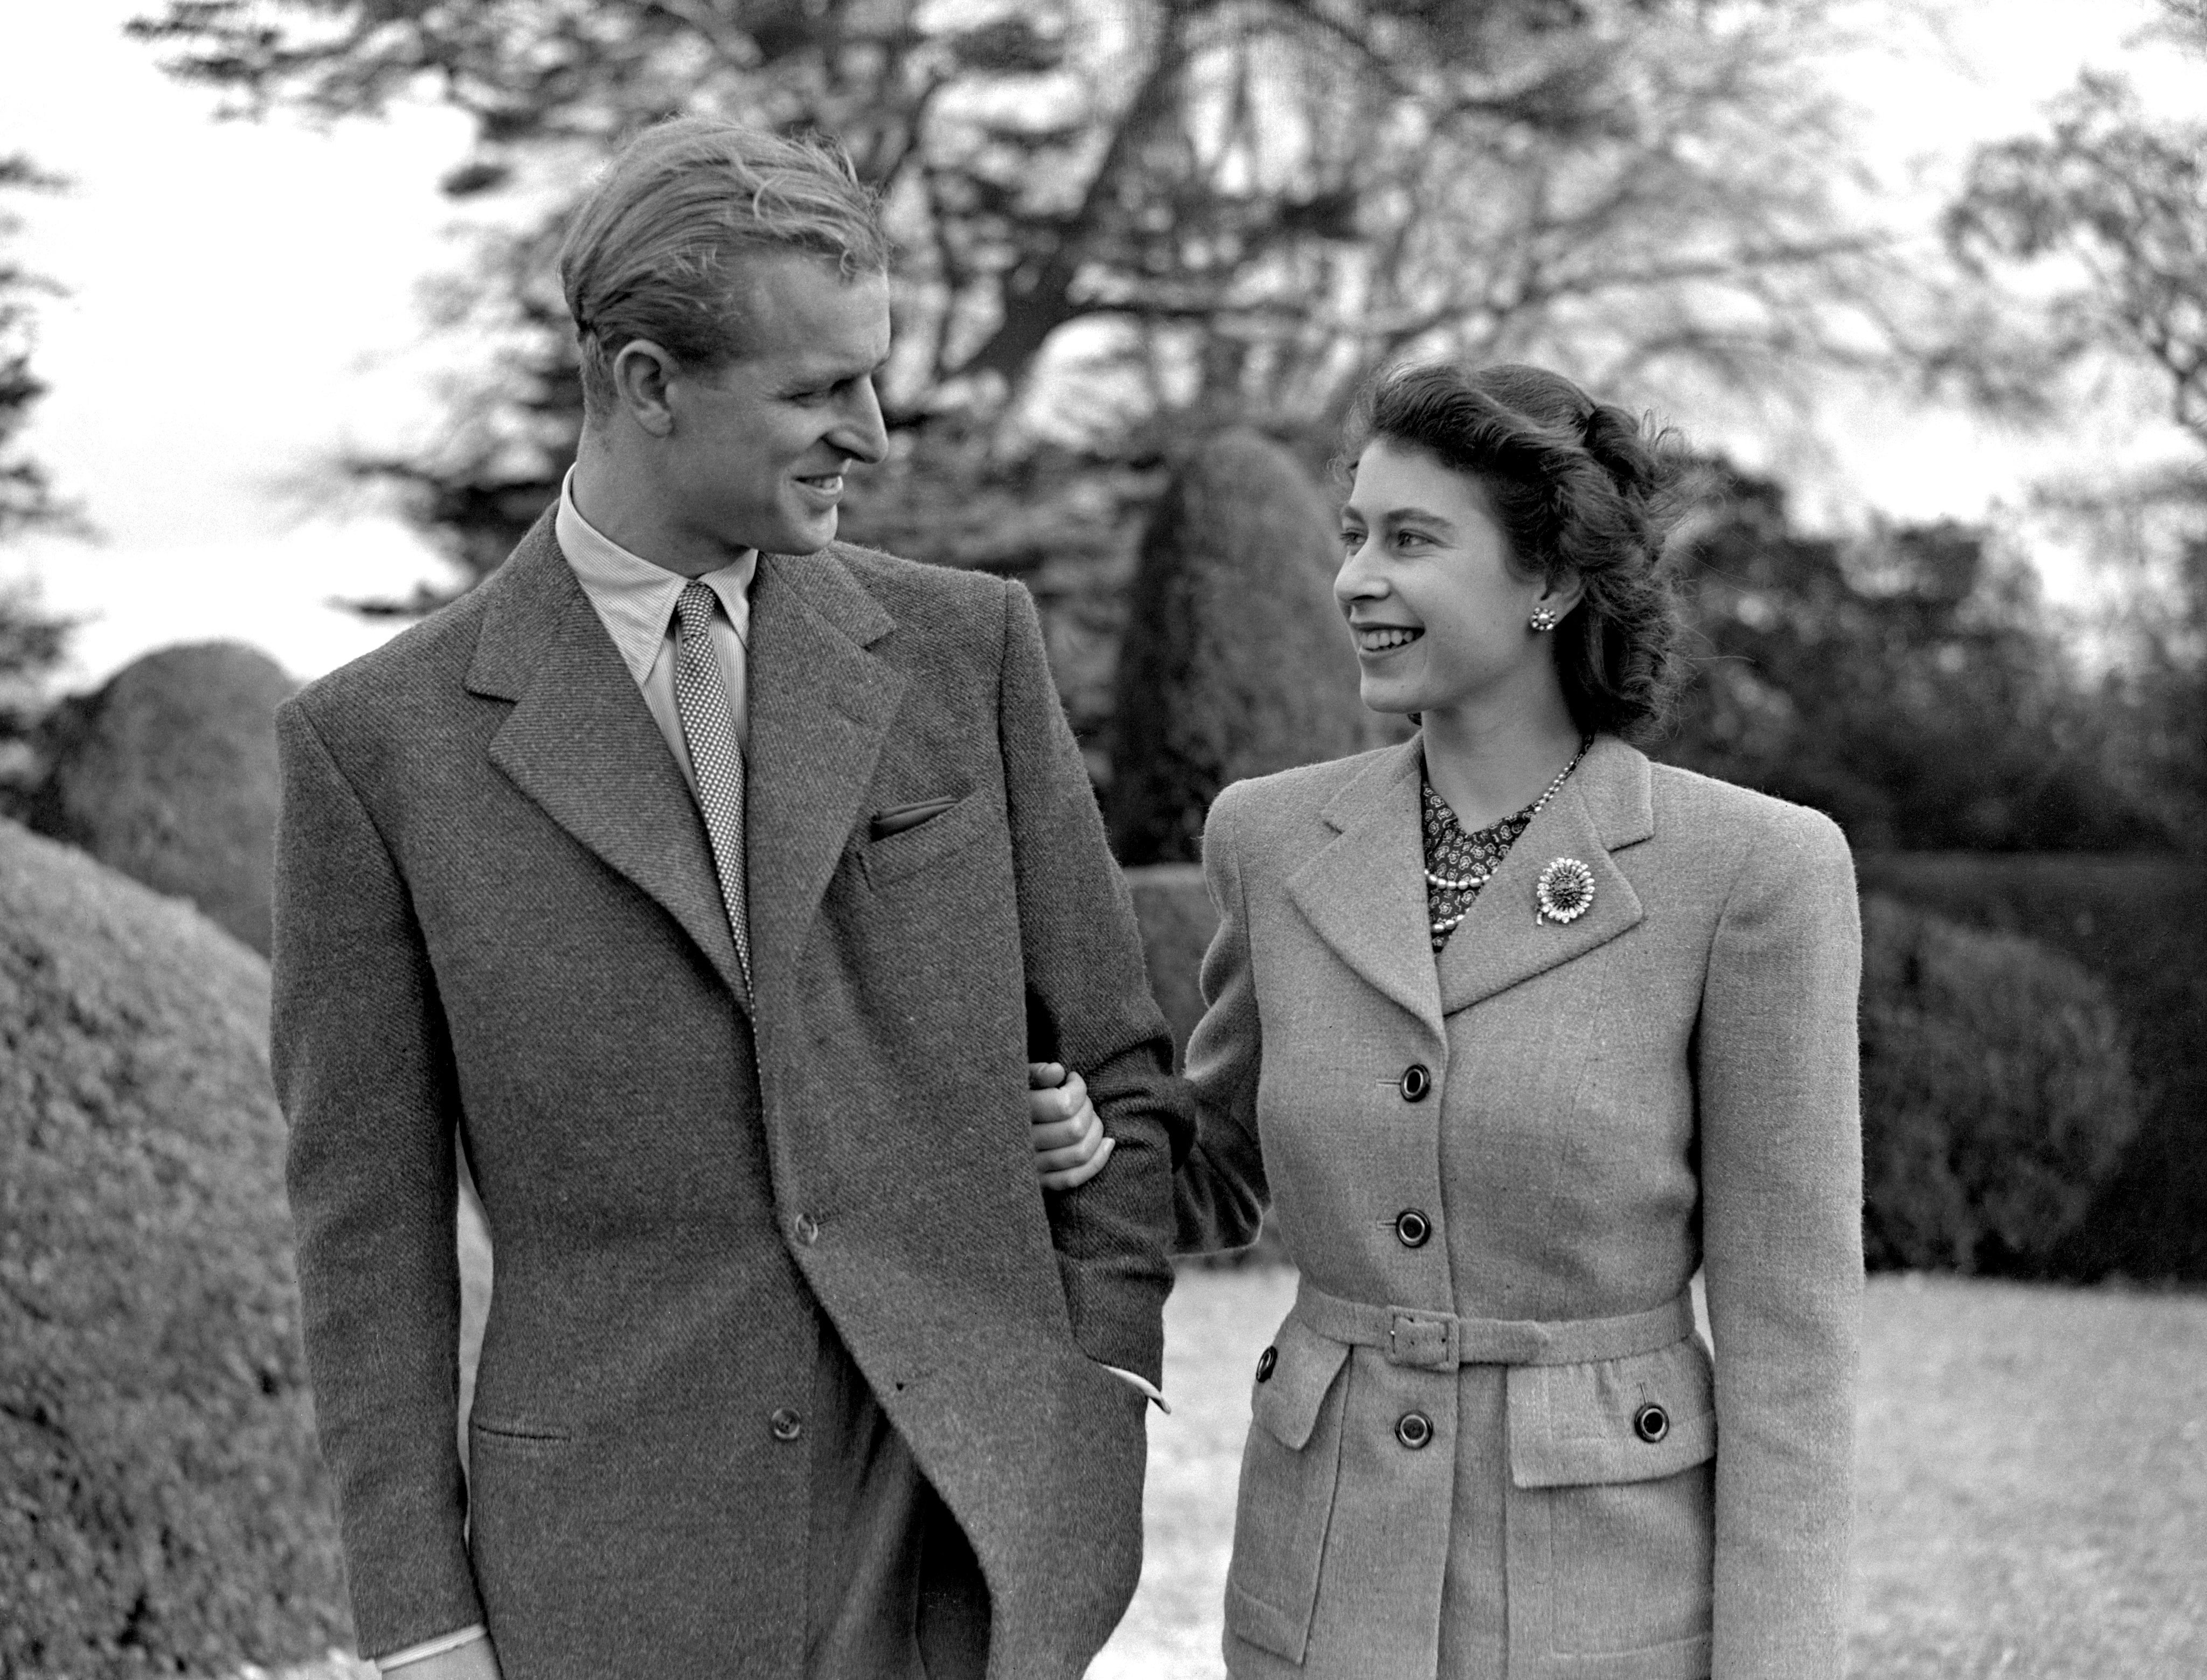 Princess Elizabeth enjoying a stroll with her husband the Duke of Edinburgh in their first public appearance since their wedding. 23/11/47.